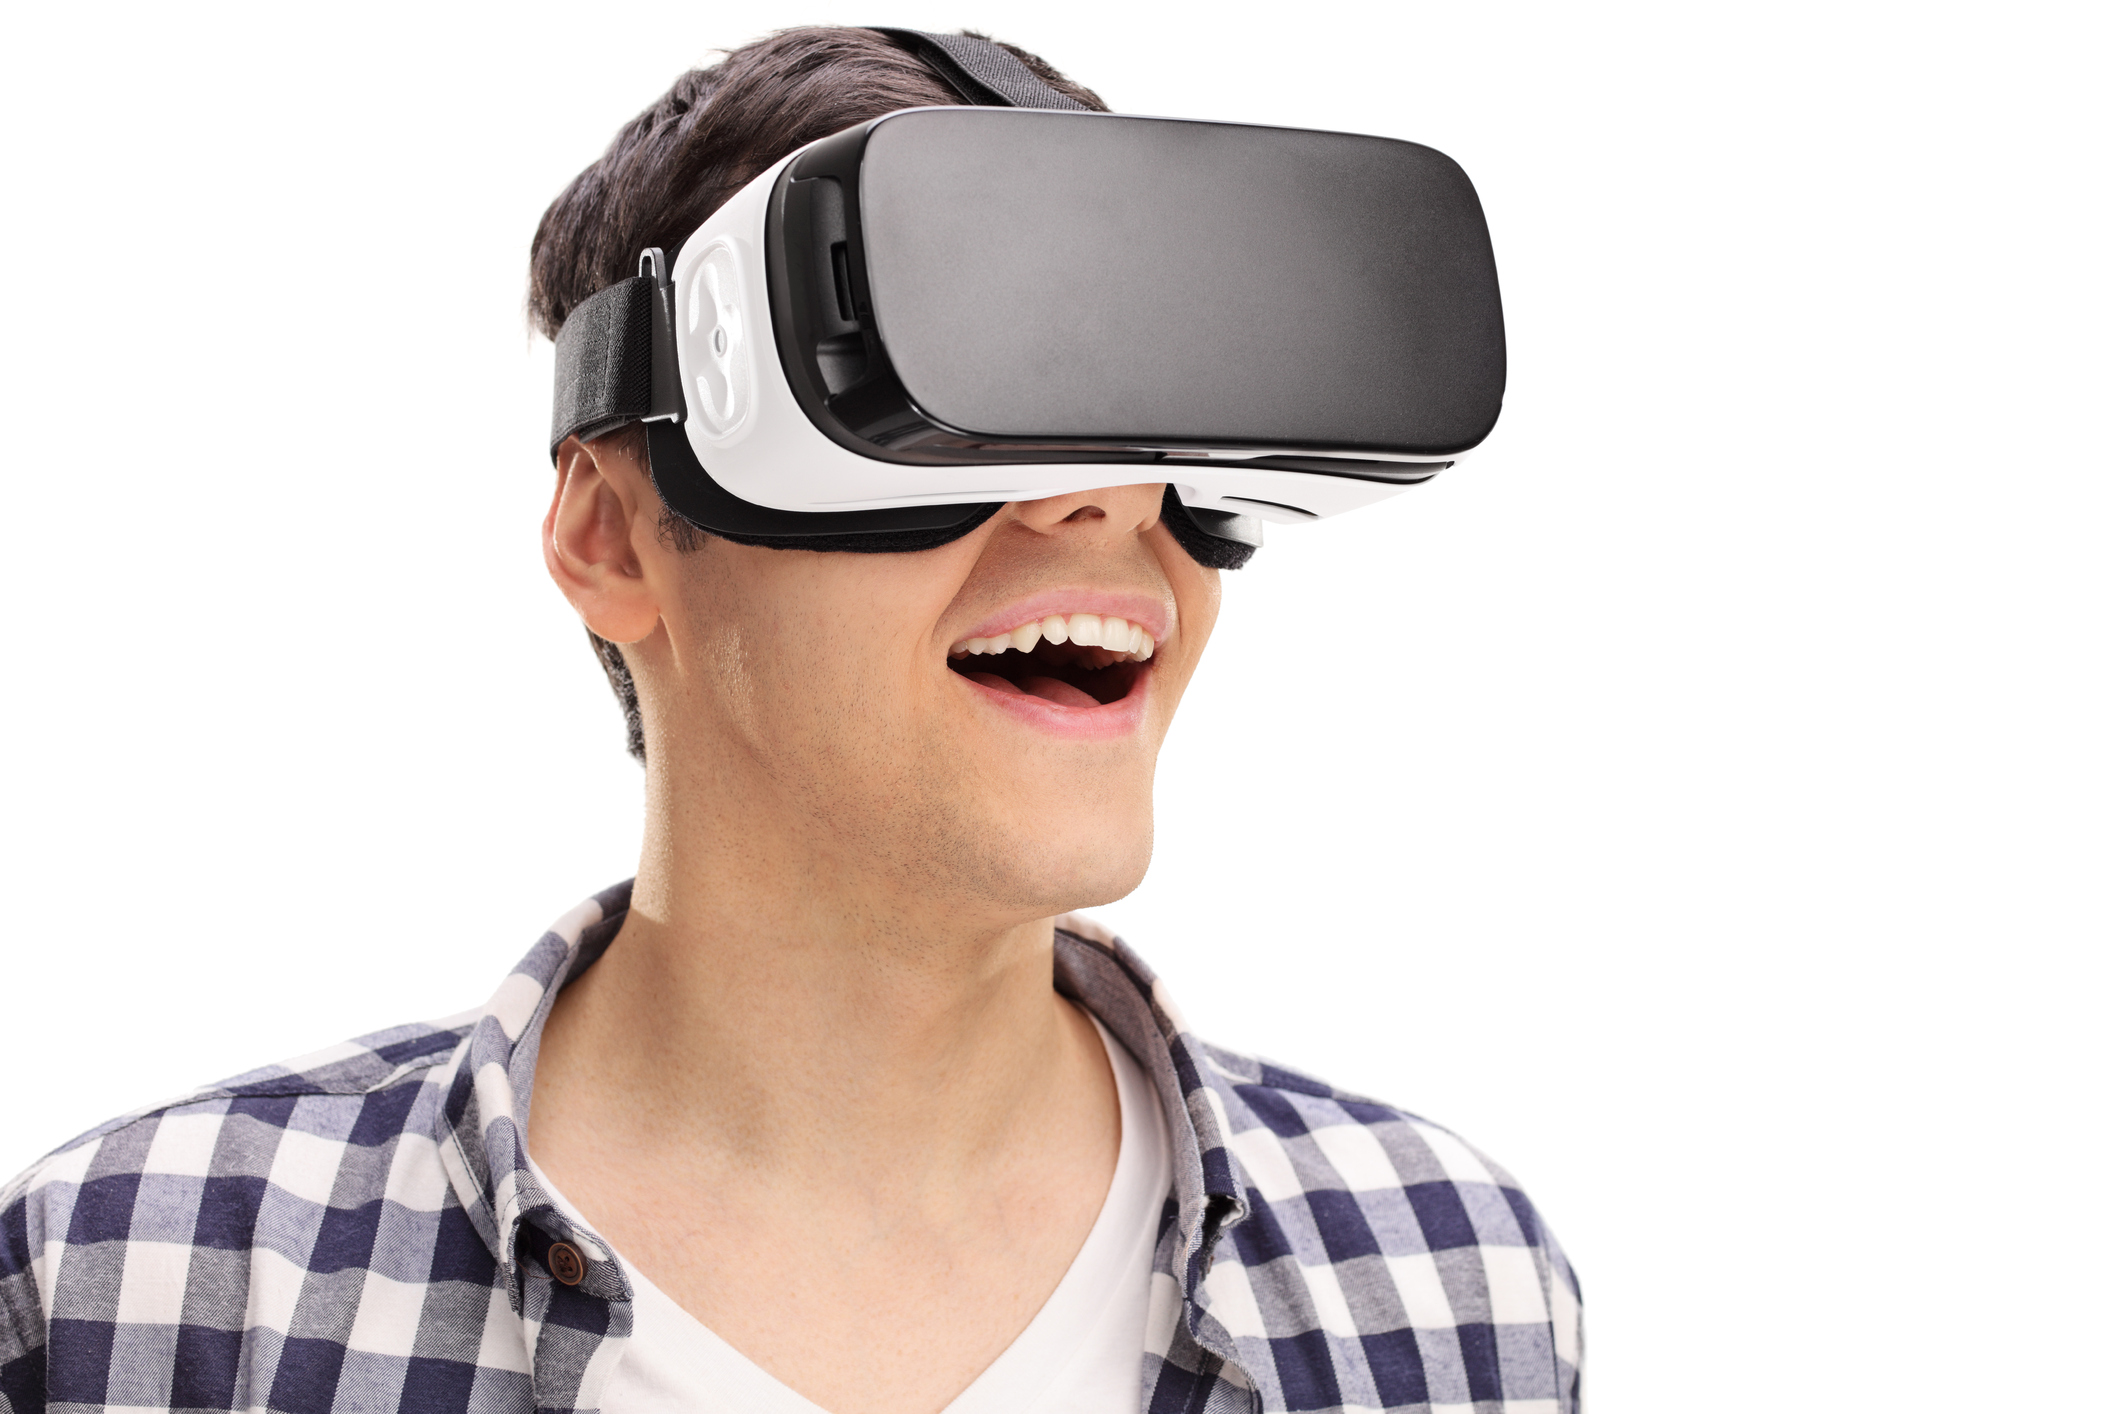 Купить очки днс. Очки виртуальной реальности Эппл. Человек с виар очками. Очки виртуальной реальности на белом фоне. Очки виртуальной реальности на человеке.